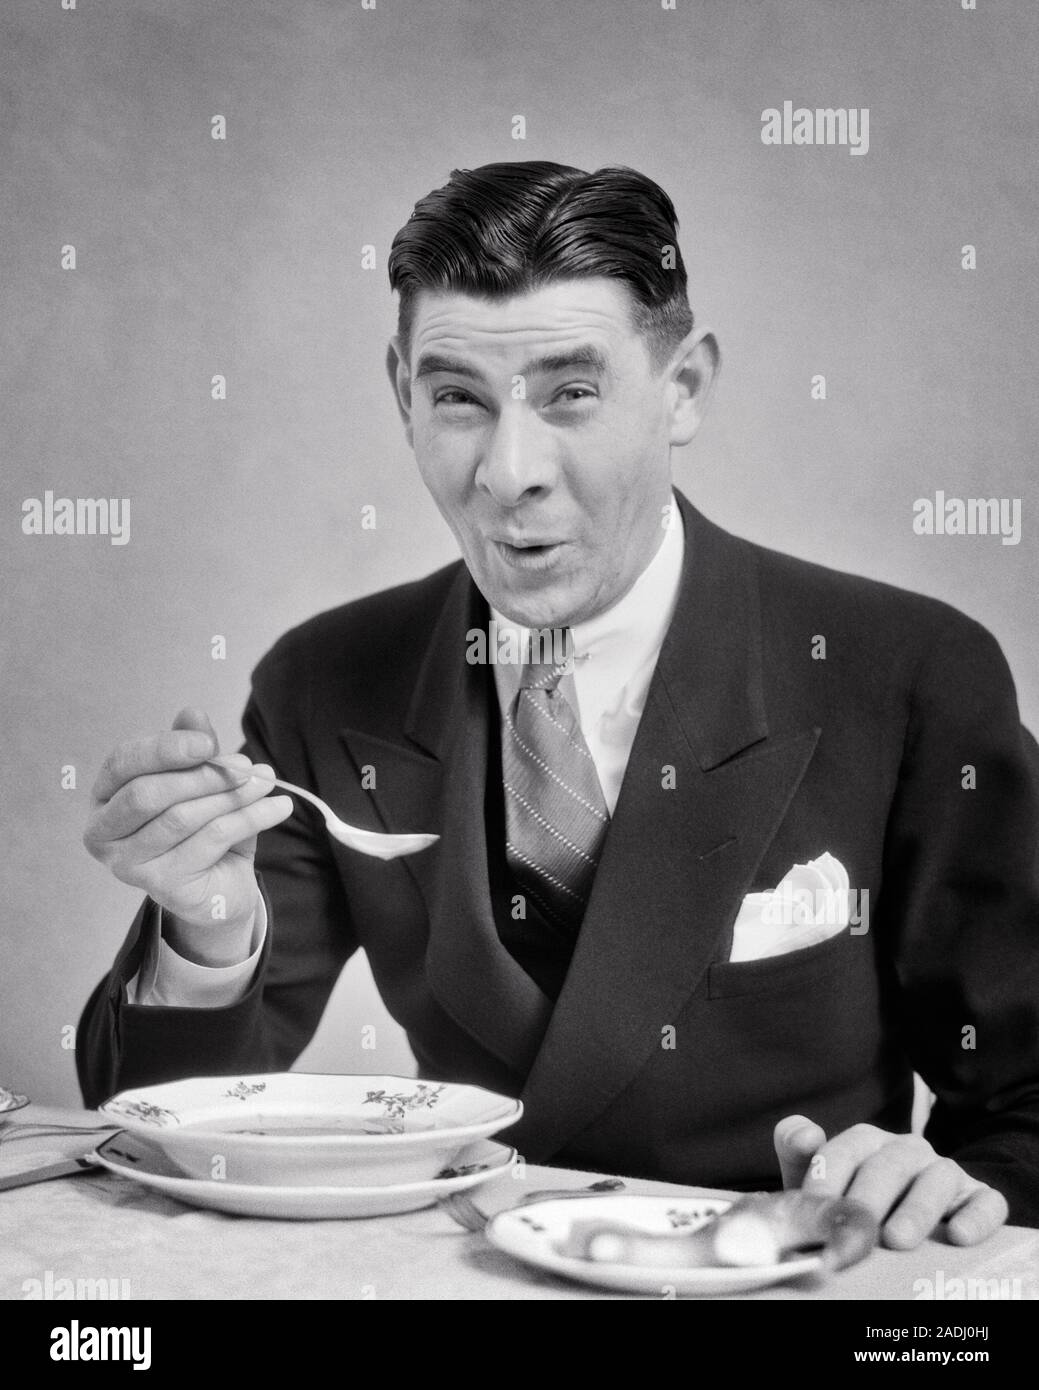 1930er Jahre Mann mit Anzug und Krawatte essen eine Schüssel mit Suppe, einen lustigen GESICHTSAUSDRUCK als Suppe ZU HEISS ODER LECKER ODER SCHRECKLICH - f 5856 HAR 001 HARS KOPIE RAUM MIT HALBER LÄNGE PERSONEN MÄNNER AUSDRÜCKE B&W AUGENKONTAKT BRUNETTE Anzug und Krawatte humorvoll und Aufregung Ernährung komische Geschmack lecker konzeptionelle Komödie konsumieren, konsumieren Nahrung stilvolle schrecklich oder schlechten Geschmack Mitte - Mitte - erwachsenen Mann SCHWARZ UND WEISS KAUKASISCHEN ETHNIE KÖSTLICHE HAR 001 ALTMODISCH Stockfoto